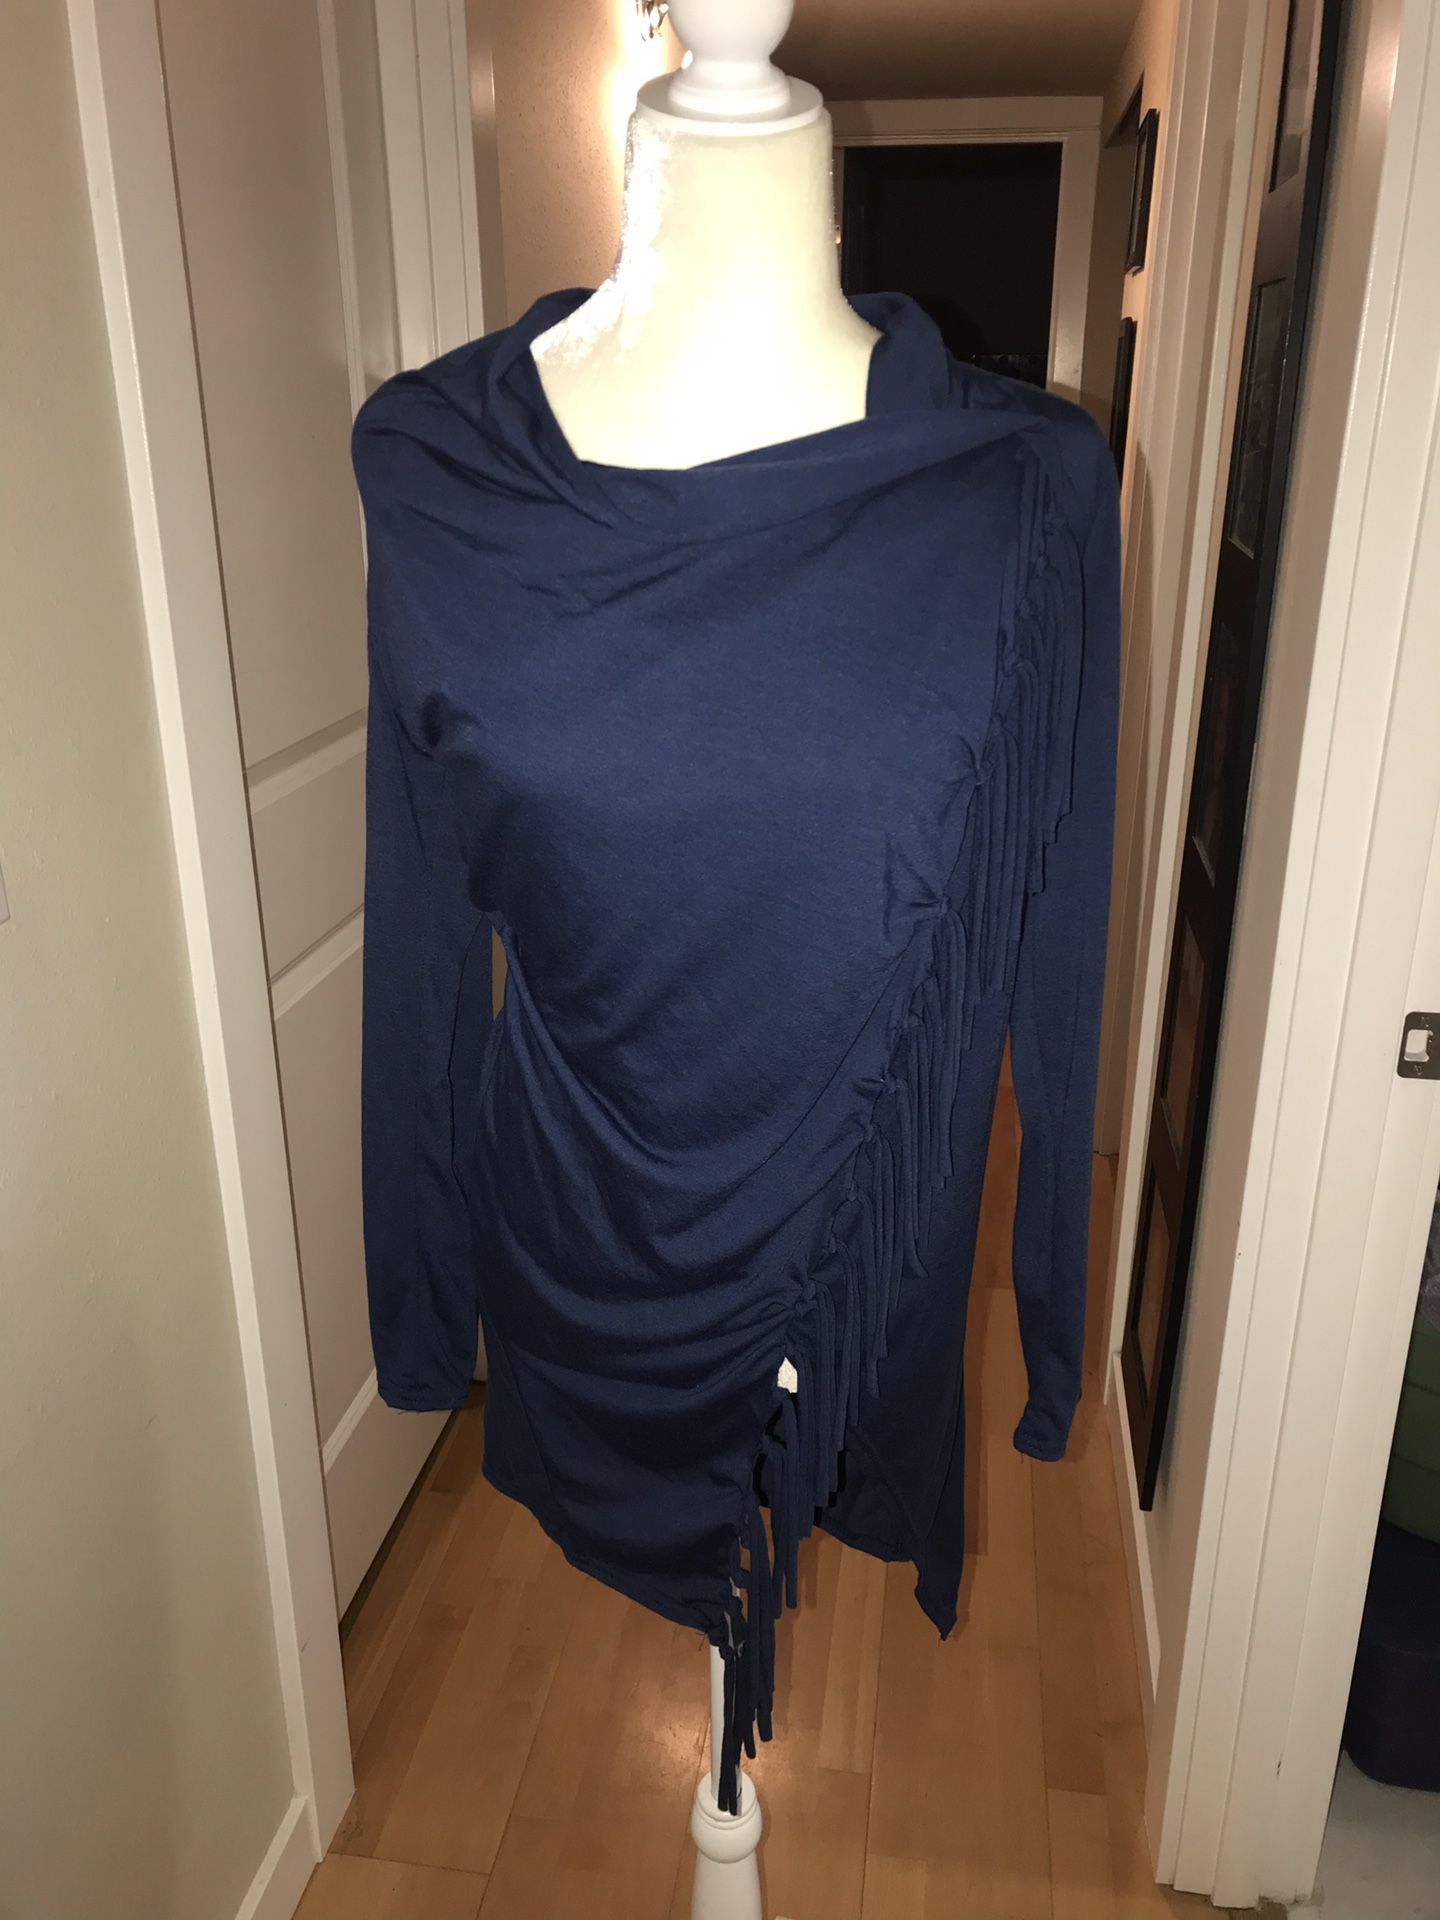 Beautiful navy blue shawl wrap sweater size small